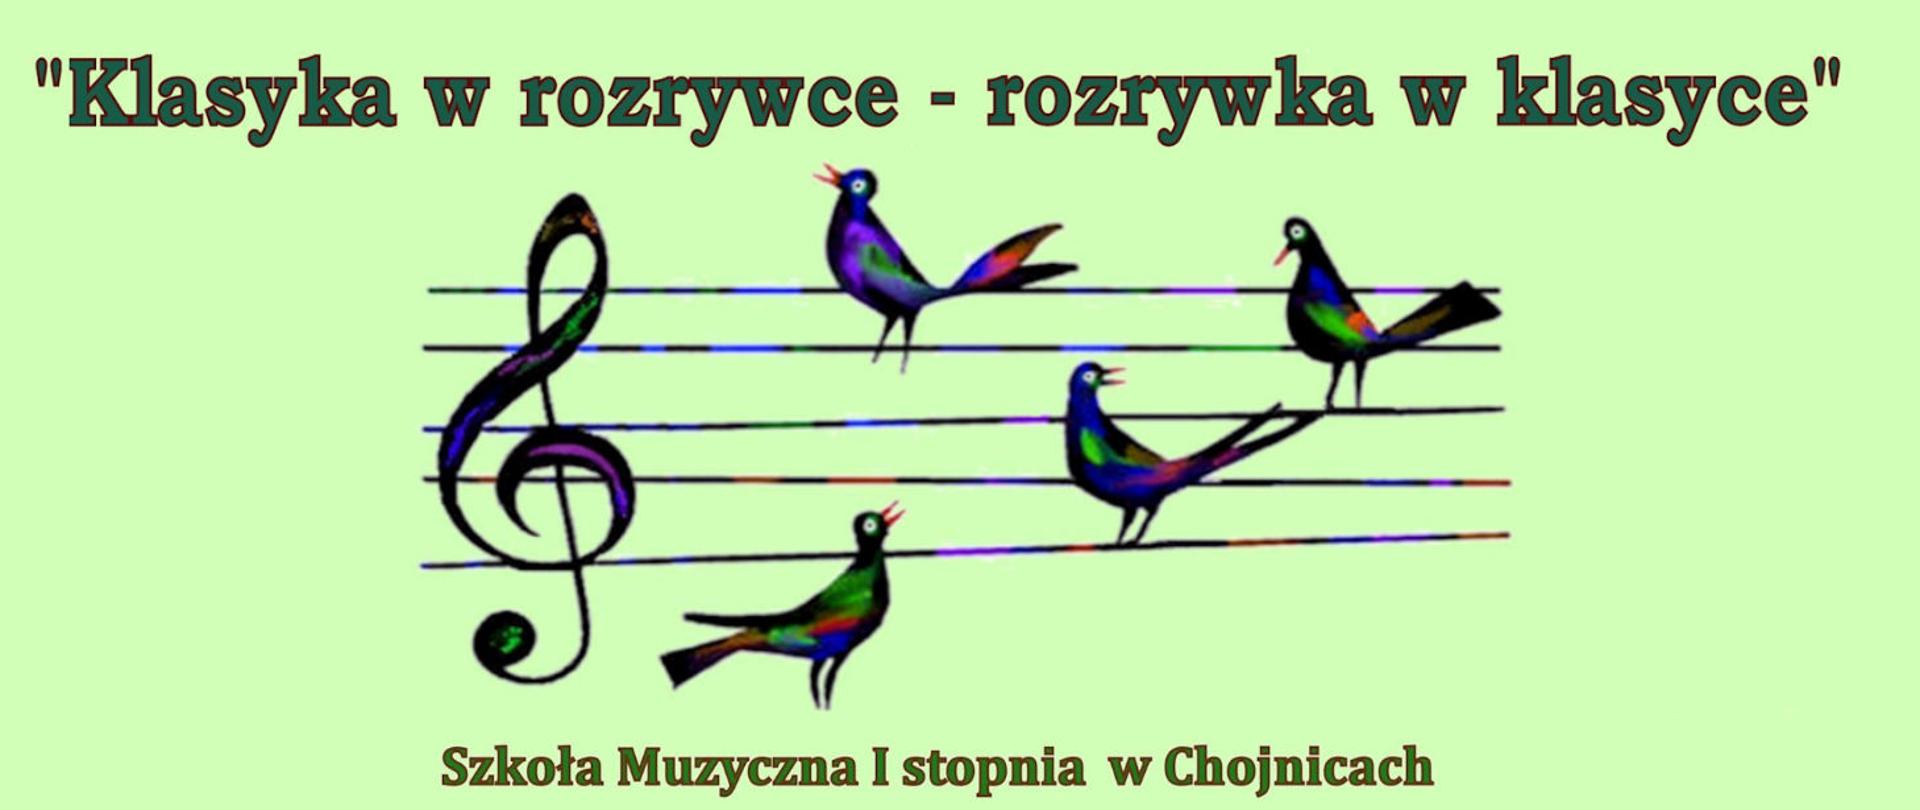 Zdjęcie przedstawia informację o konkursie "Klasyka w rozrywce - rozrywka w klasyce" organizowanym w Szkole Muzycznej I stopnia w Chojnicach.
Oprócz informacji został wpleciony rysunek śpiewających ptaszków na pięciolinii.